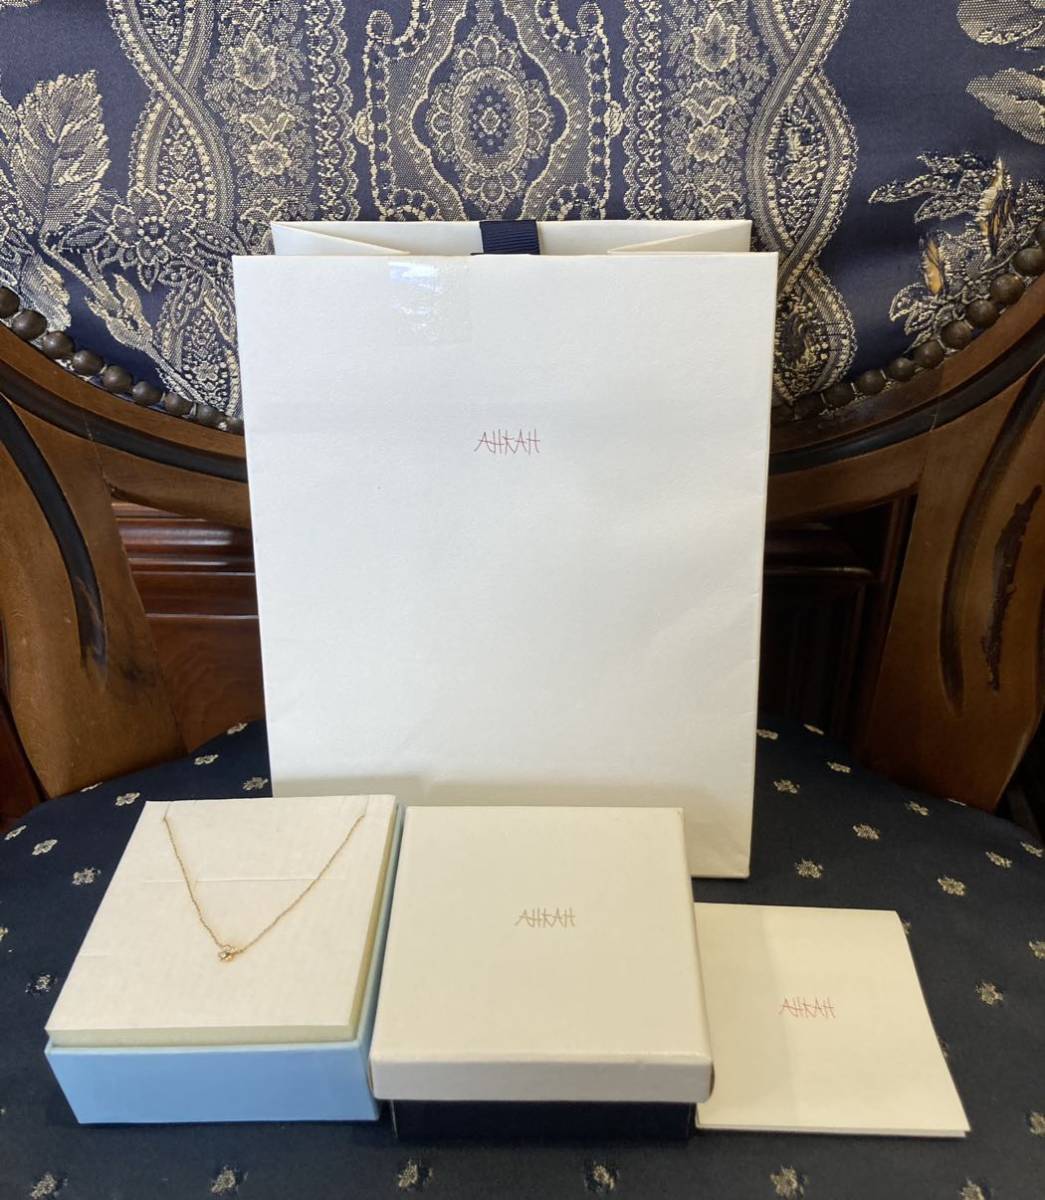 新品 正規品 AHKAH アーカー ネックレス クローバーディアリー ダイヤモンド 箱紙袋リボン プレゼント ダイヤ 購入証明書付き xoxo18